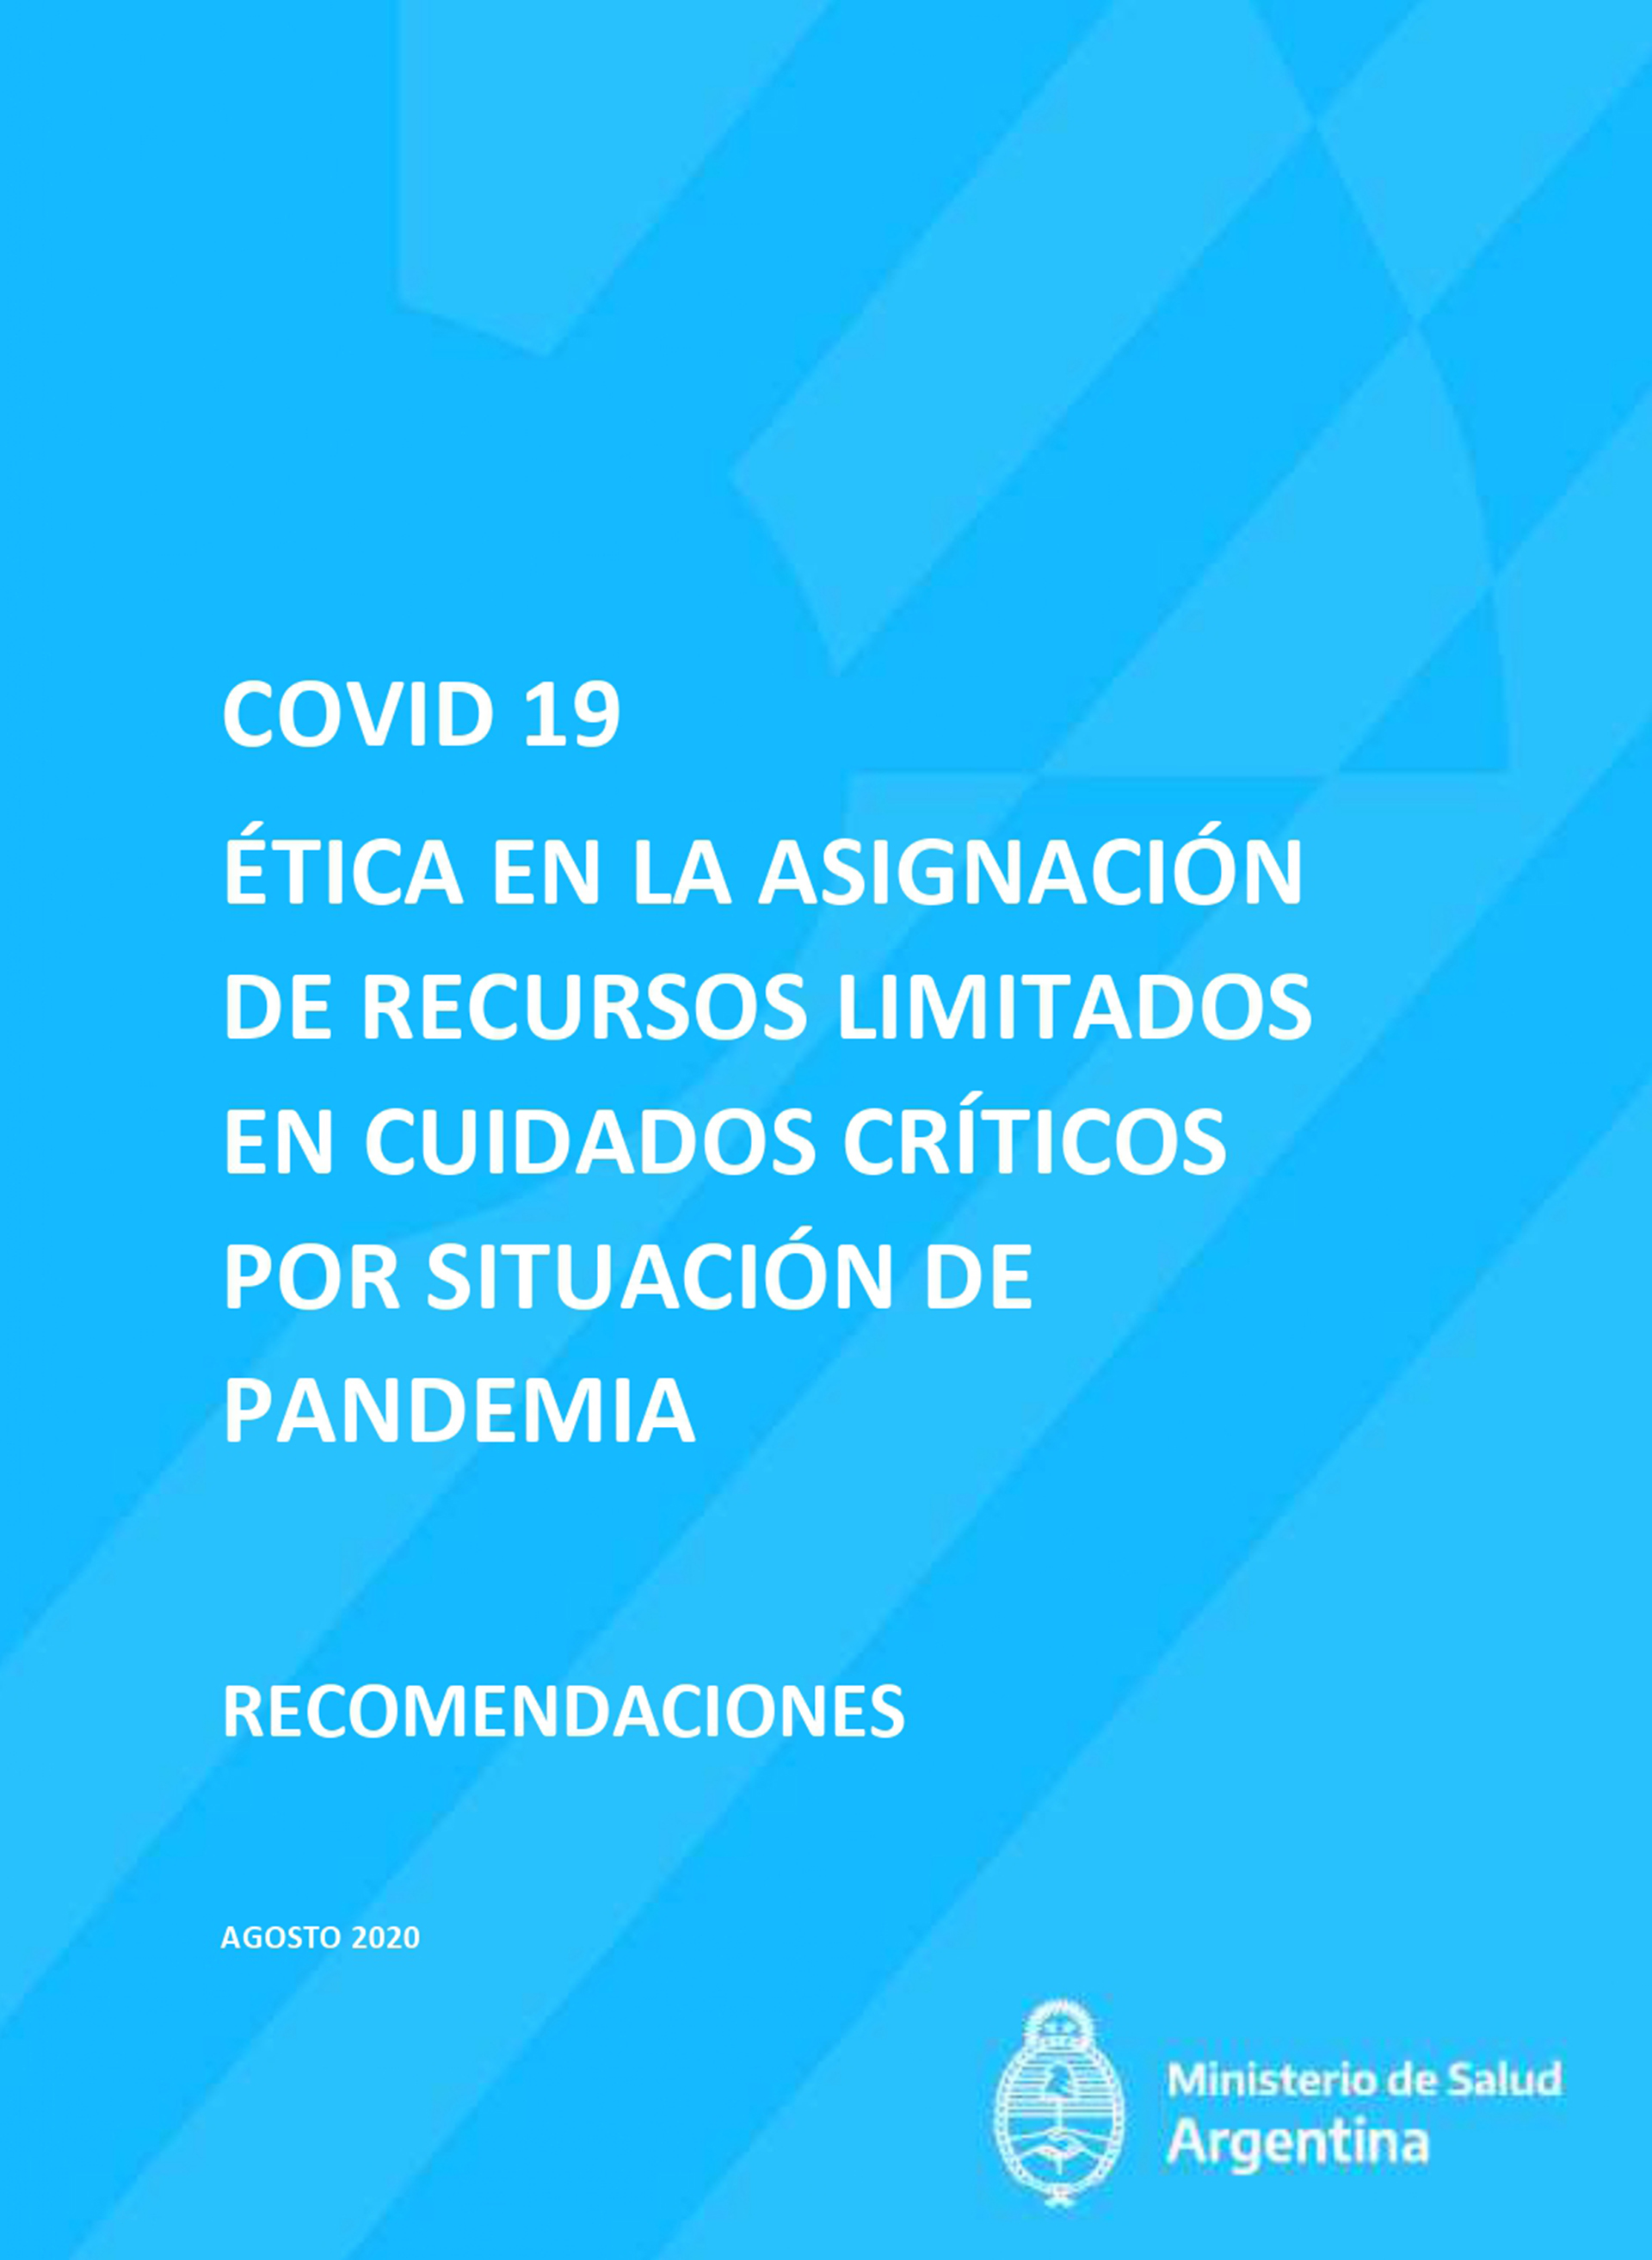 El Comité de Ética y Derechos Humanos en Pandemia COVID-19 fue creado por la resolución 1092 del Ministerio de Salud de la Nación, del 23 de junio del 2020